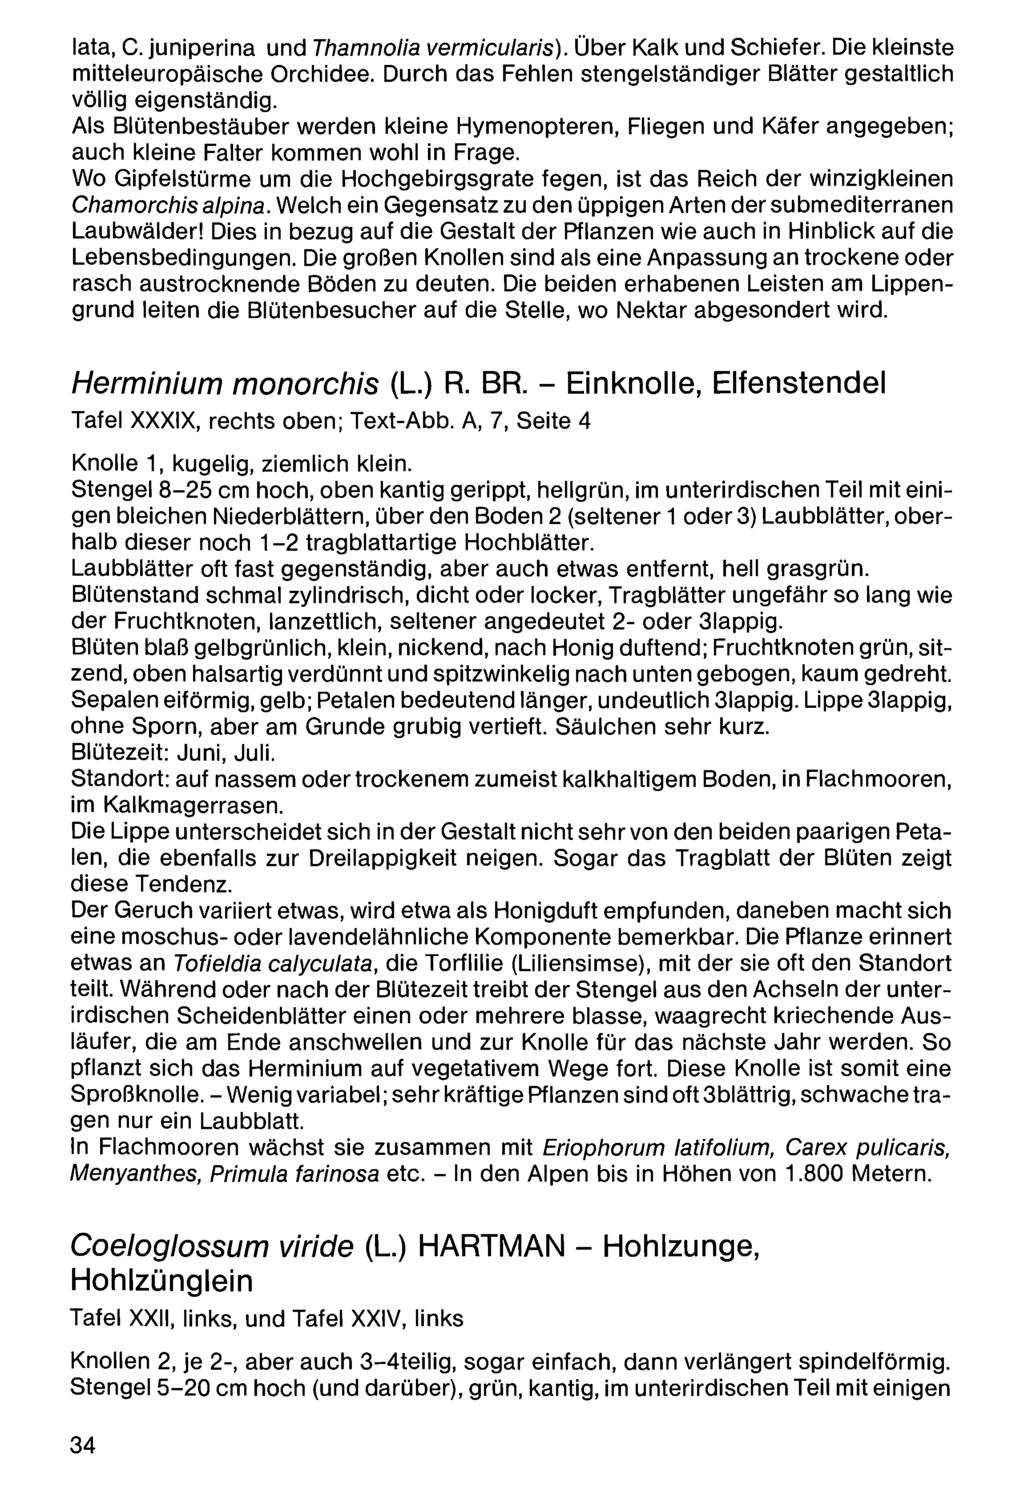 Zool.-Bot. Ges. Österreich, Austria; download unter www.biologiezentrum.at lata, C. juniperina und Thamnolia vermicularis). Über Kalk und Schiefer. Die kleinste mitteleuropäische Orchidee.